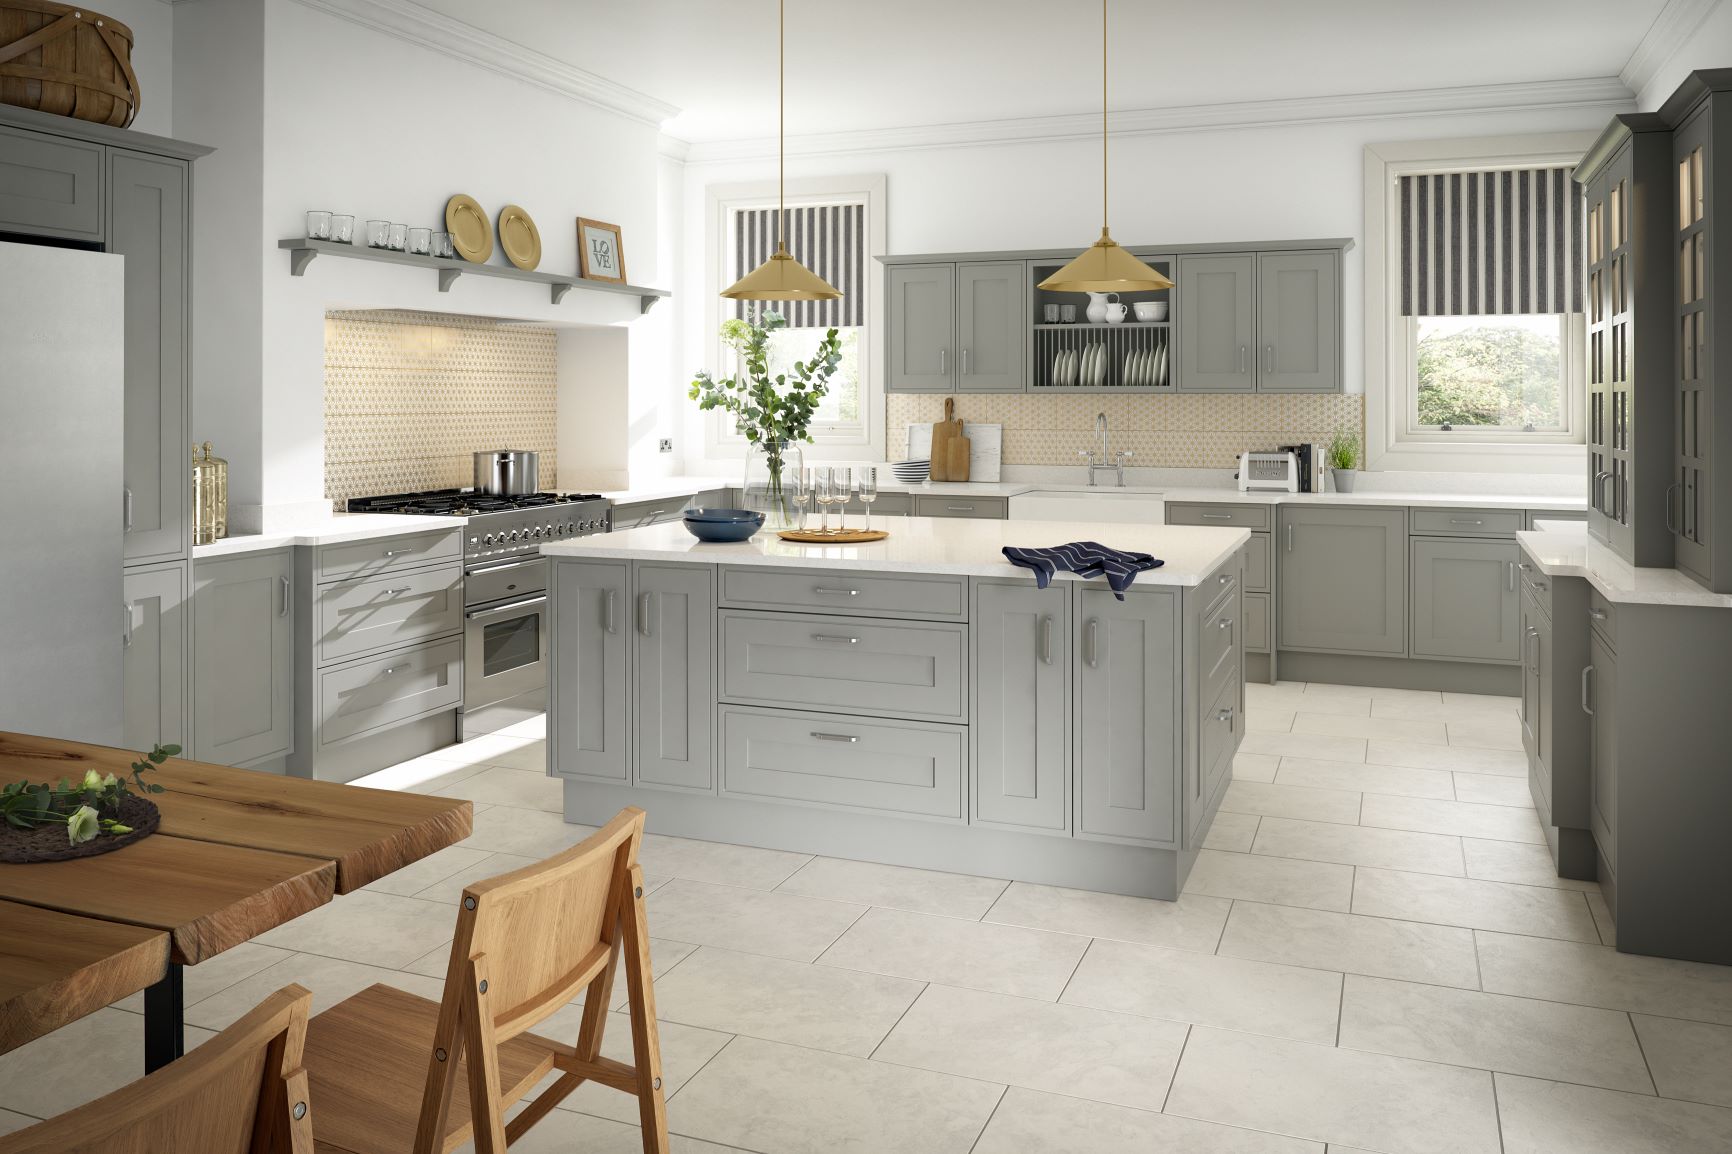 Mackintosh Edwardian Painted Light Grey kitchen